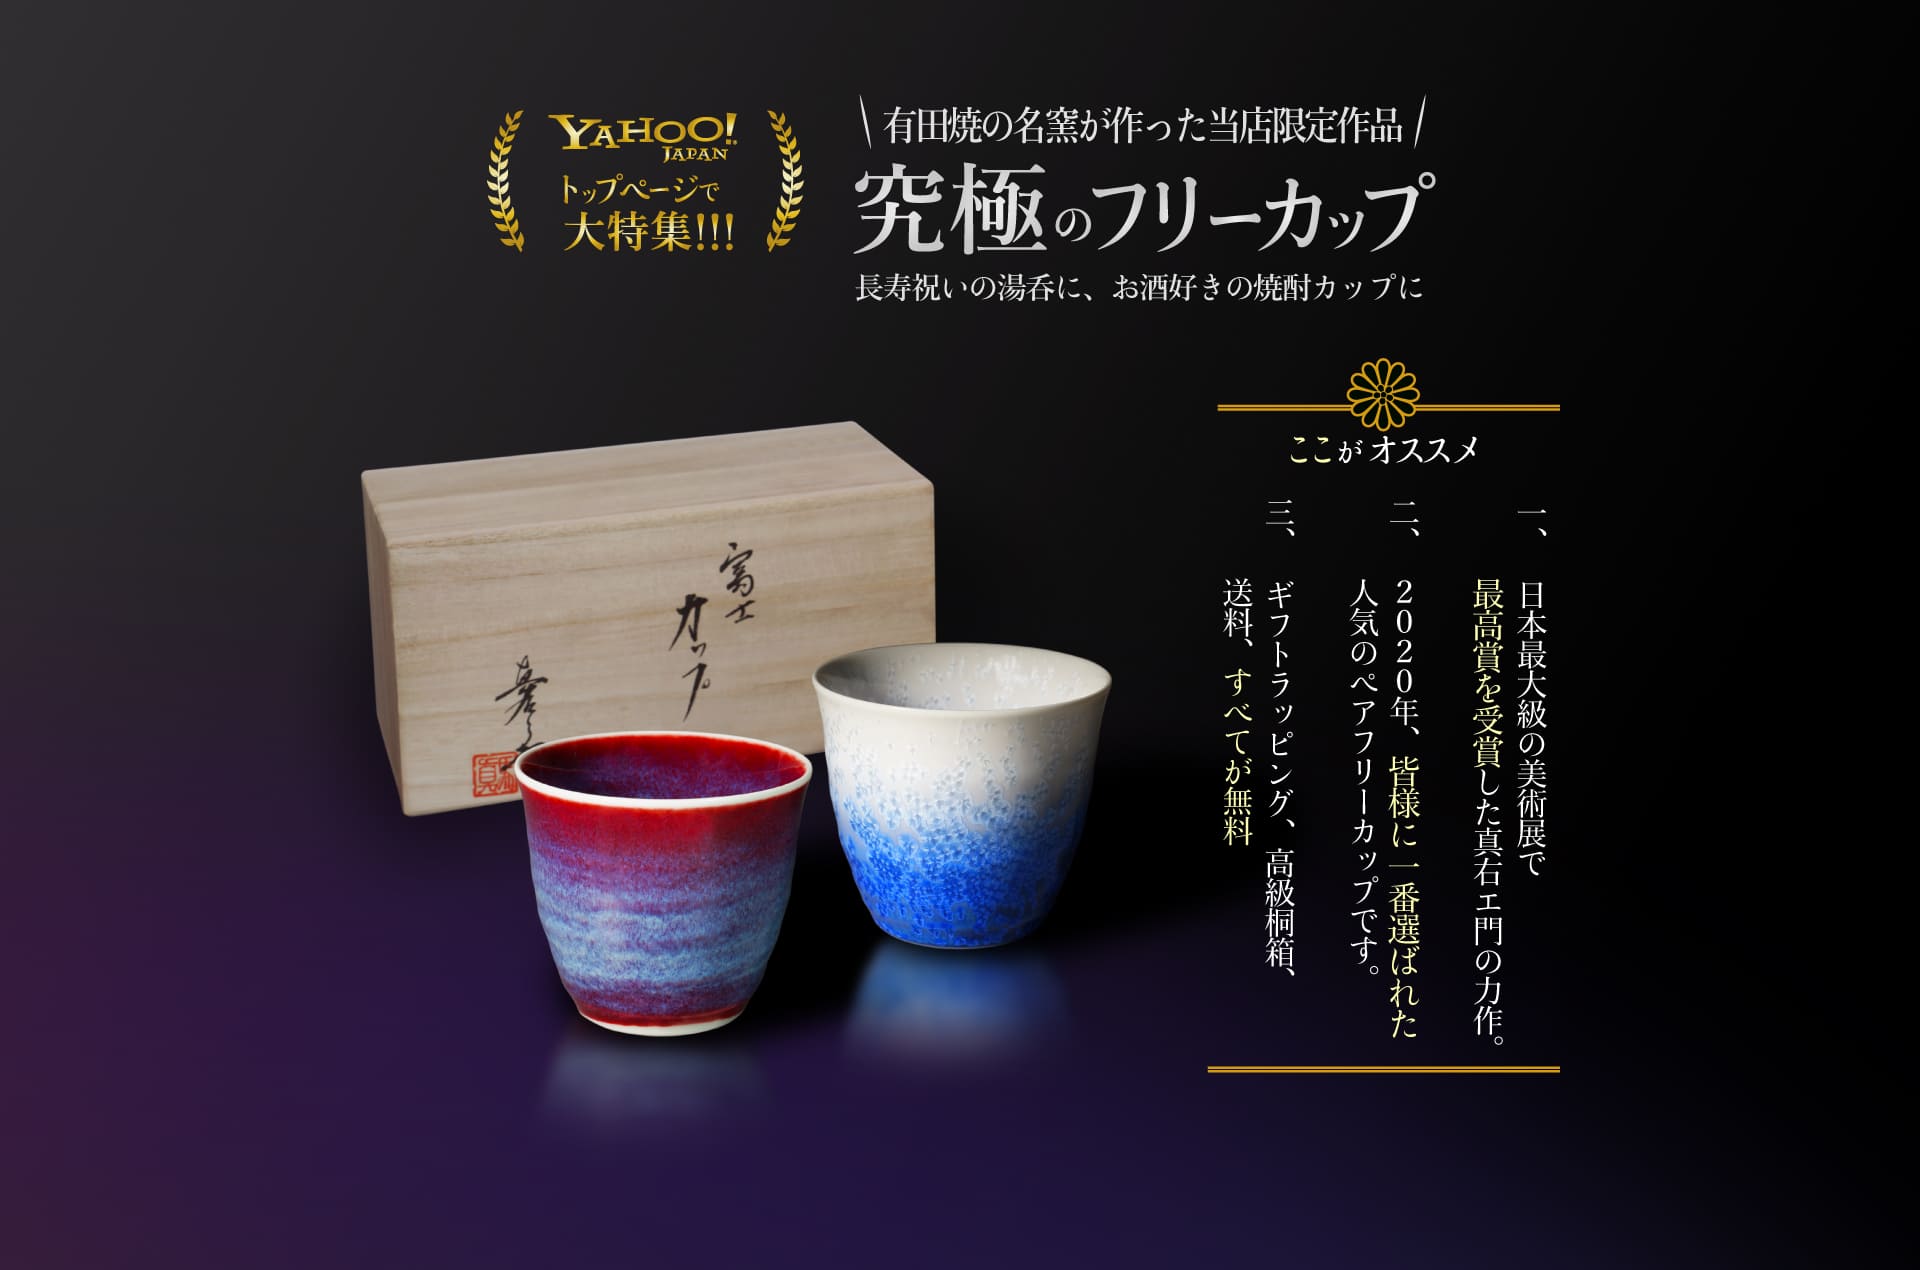 YAHOO！ JAPANトップページで大特集！！！1万セットの累計販売実績！究極のフリーカップ。長寿祝いの湯呑に、お酒好きの焼酎カップに。１．日本最大級の美術展で最高賞を受賞した真右エ門の力作。２．2016年、皆様に一番選ばれた人気のフリーカップです。３．ギフトラッピング、高級桐箱、送料、すべてが無料。